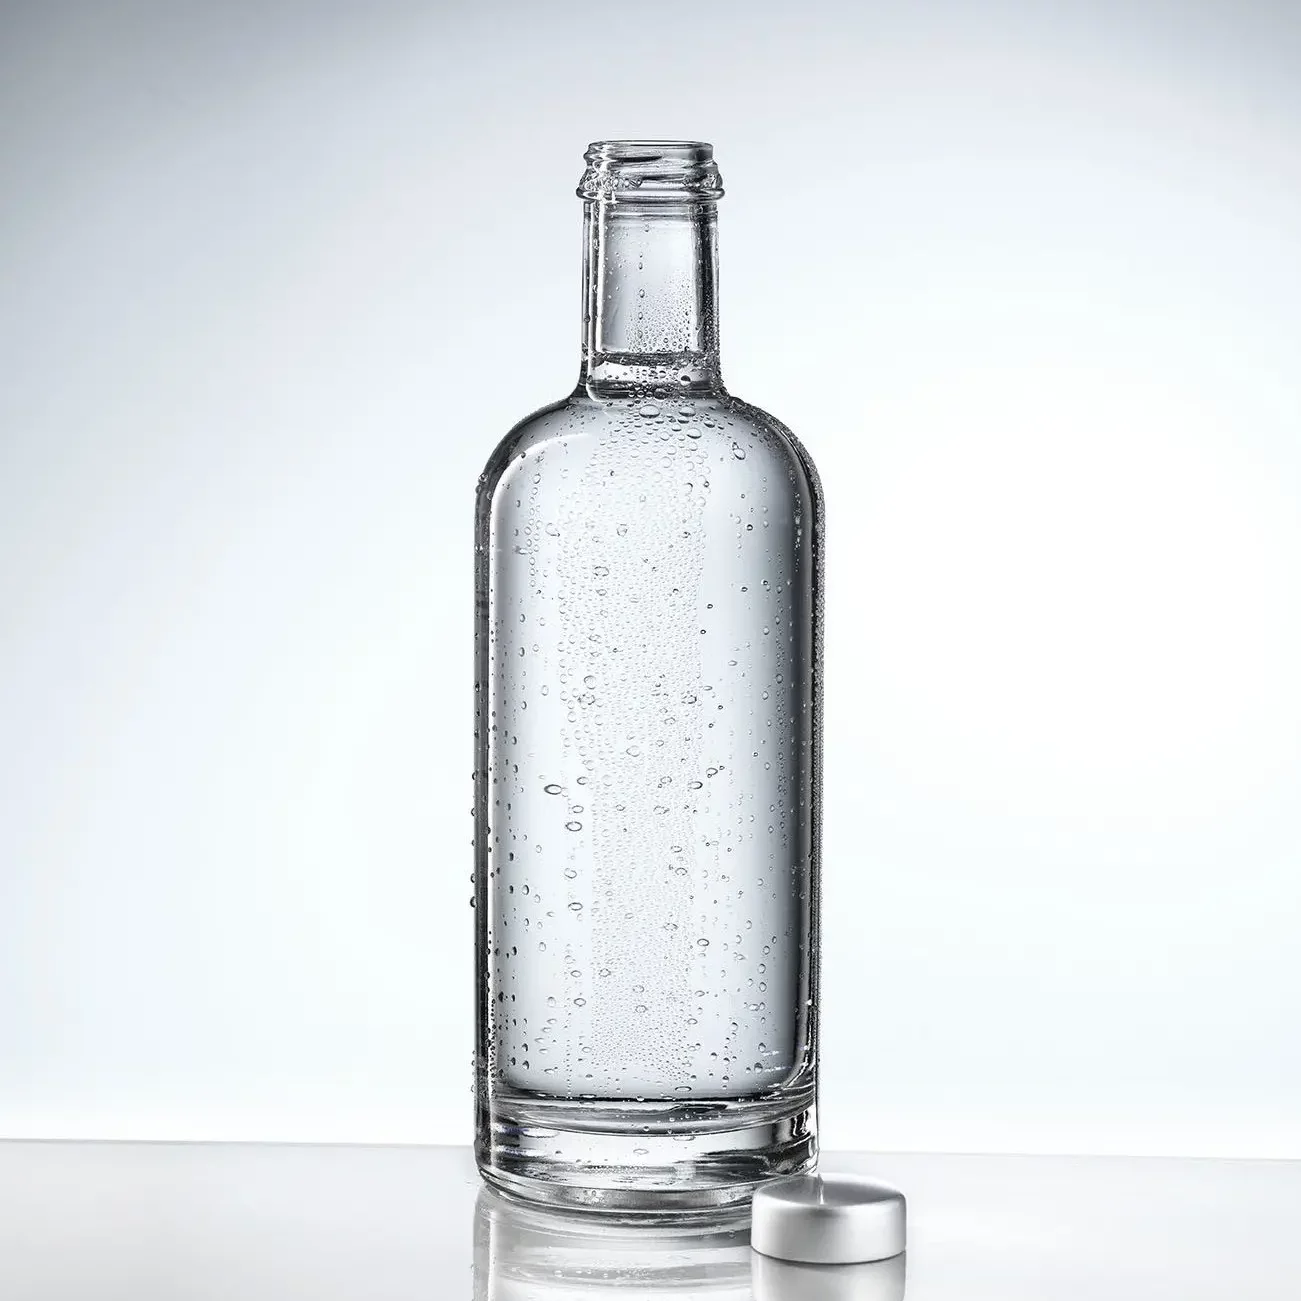 Stilo Flasche auf einem spiegelglatten Untergrund in höchster Eauvation Qualität